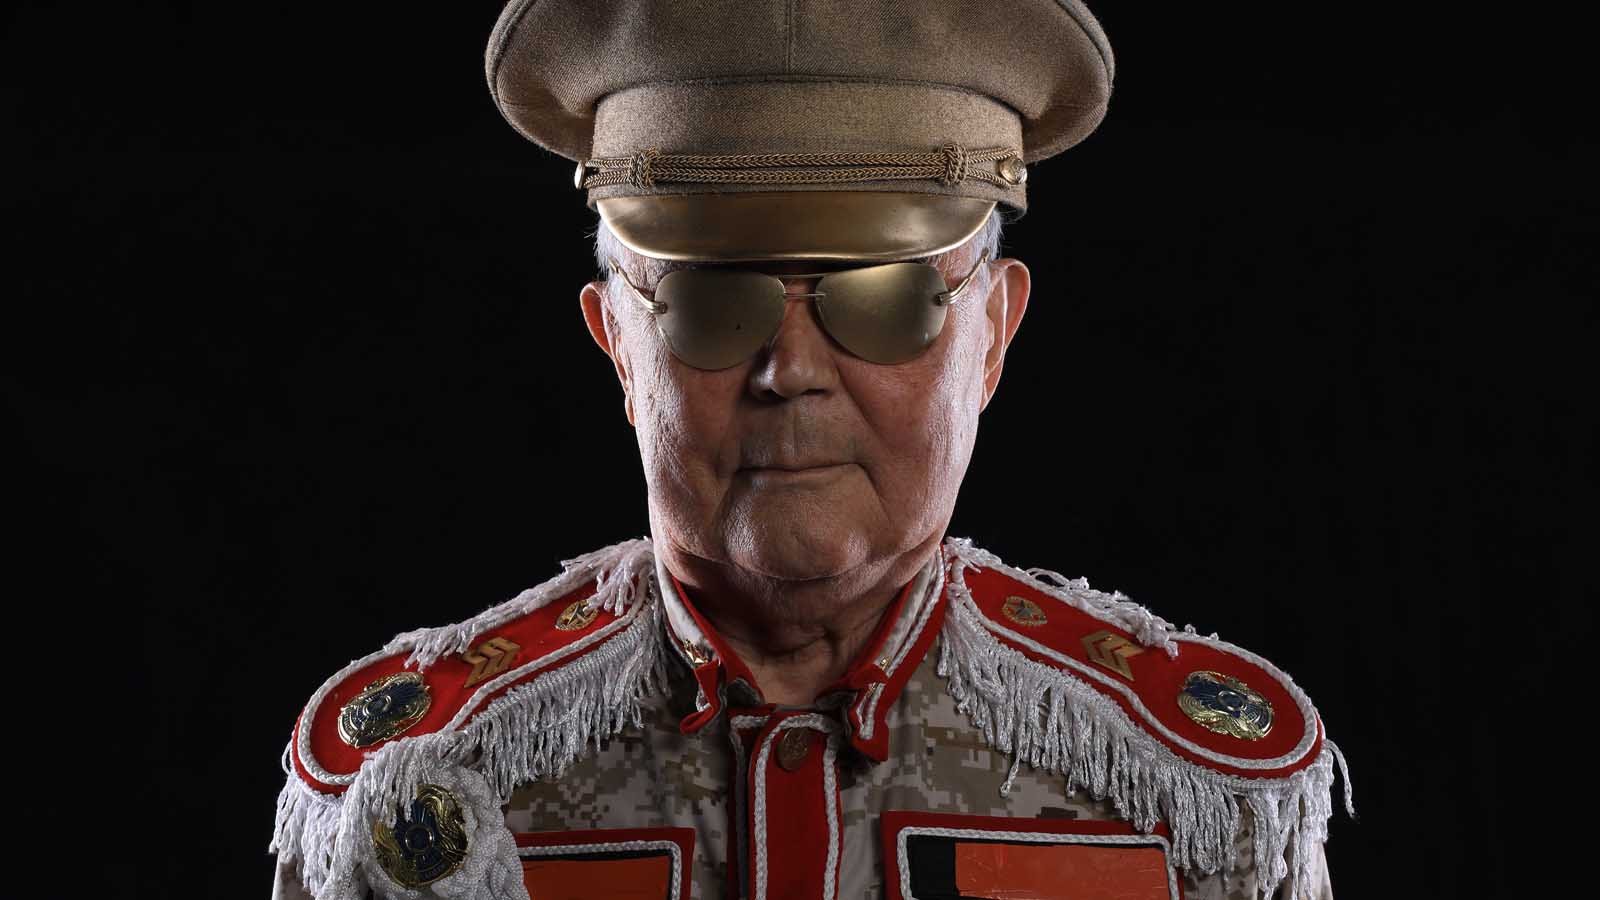 Foto: Shutterstock / Peyker. Bildet viser en eldre mann ikledd en uniform som skal gi autoritet, men som samtidig ser noe pjuskete ut.